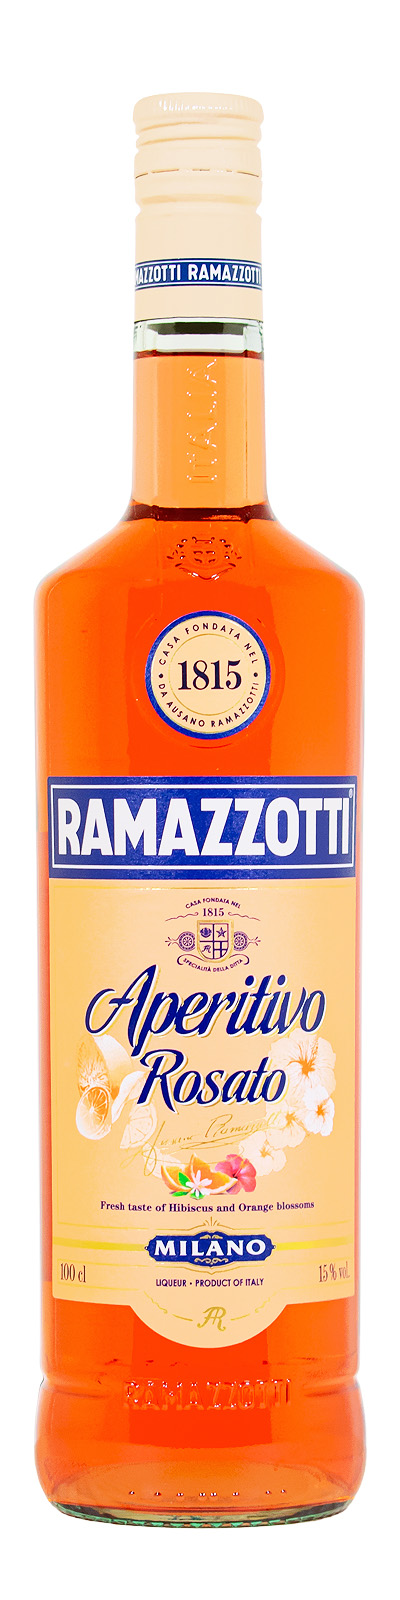 Ramazzotti Aperitivo Rosato günstig (1L) kaufen